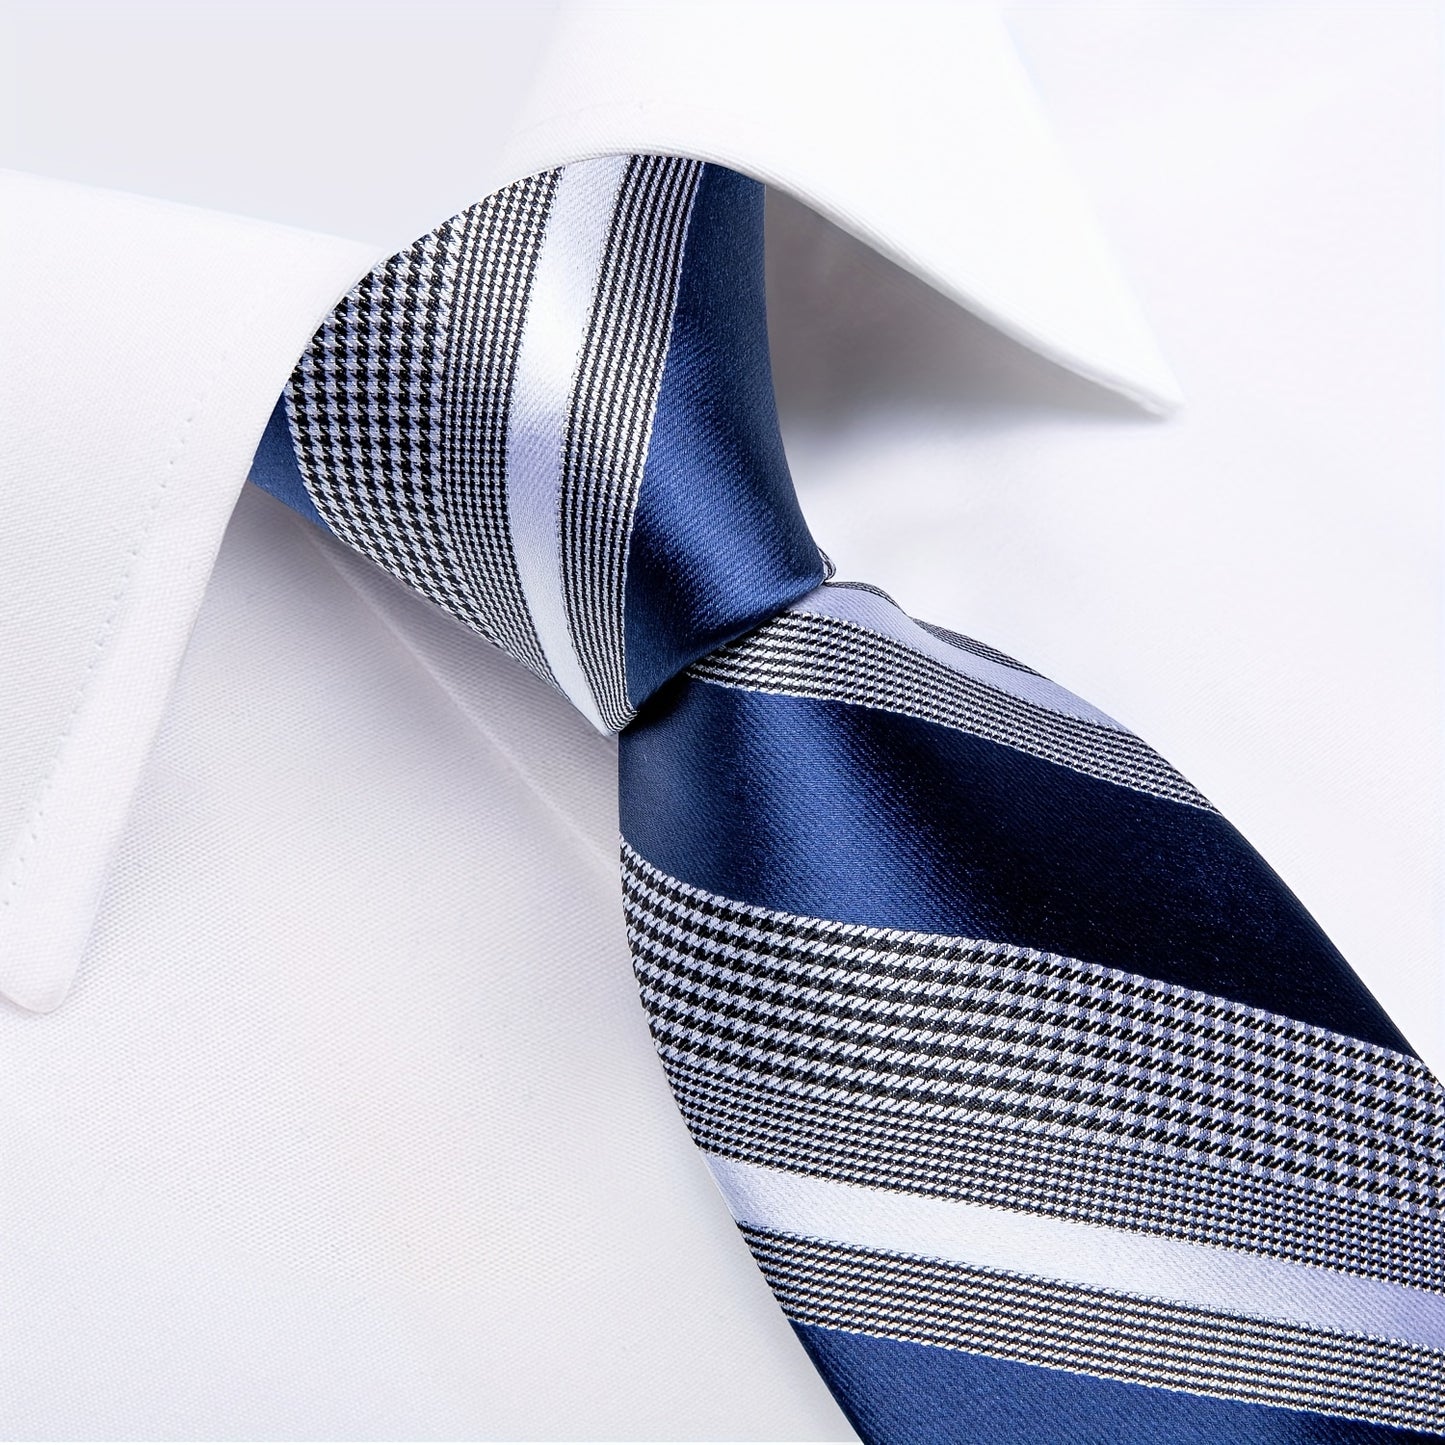 DiBanGu Formal Ties Classic Striped Necktie Handkerchief Cufflinks Gift For Men Wedding Tie Business Cravate